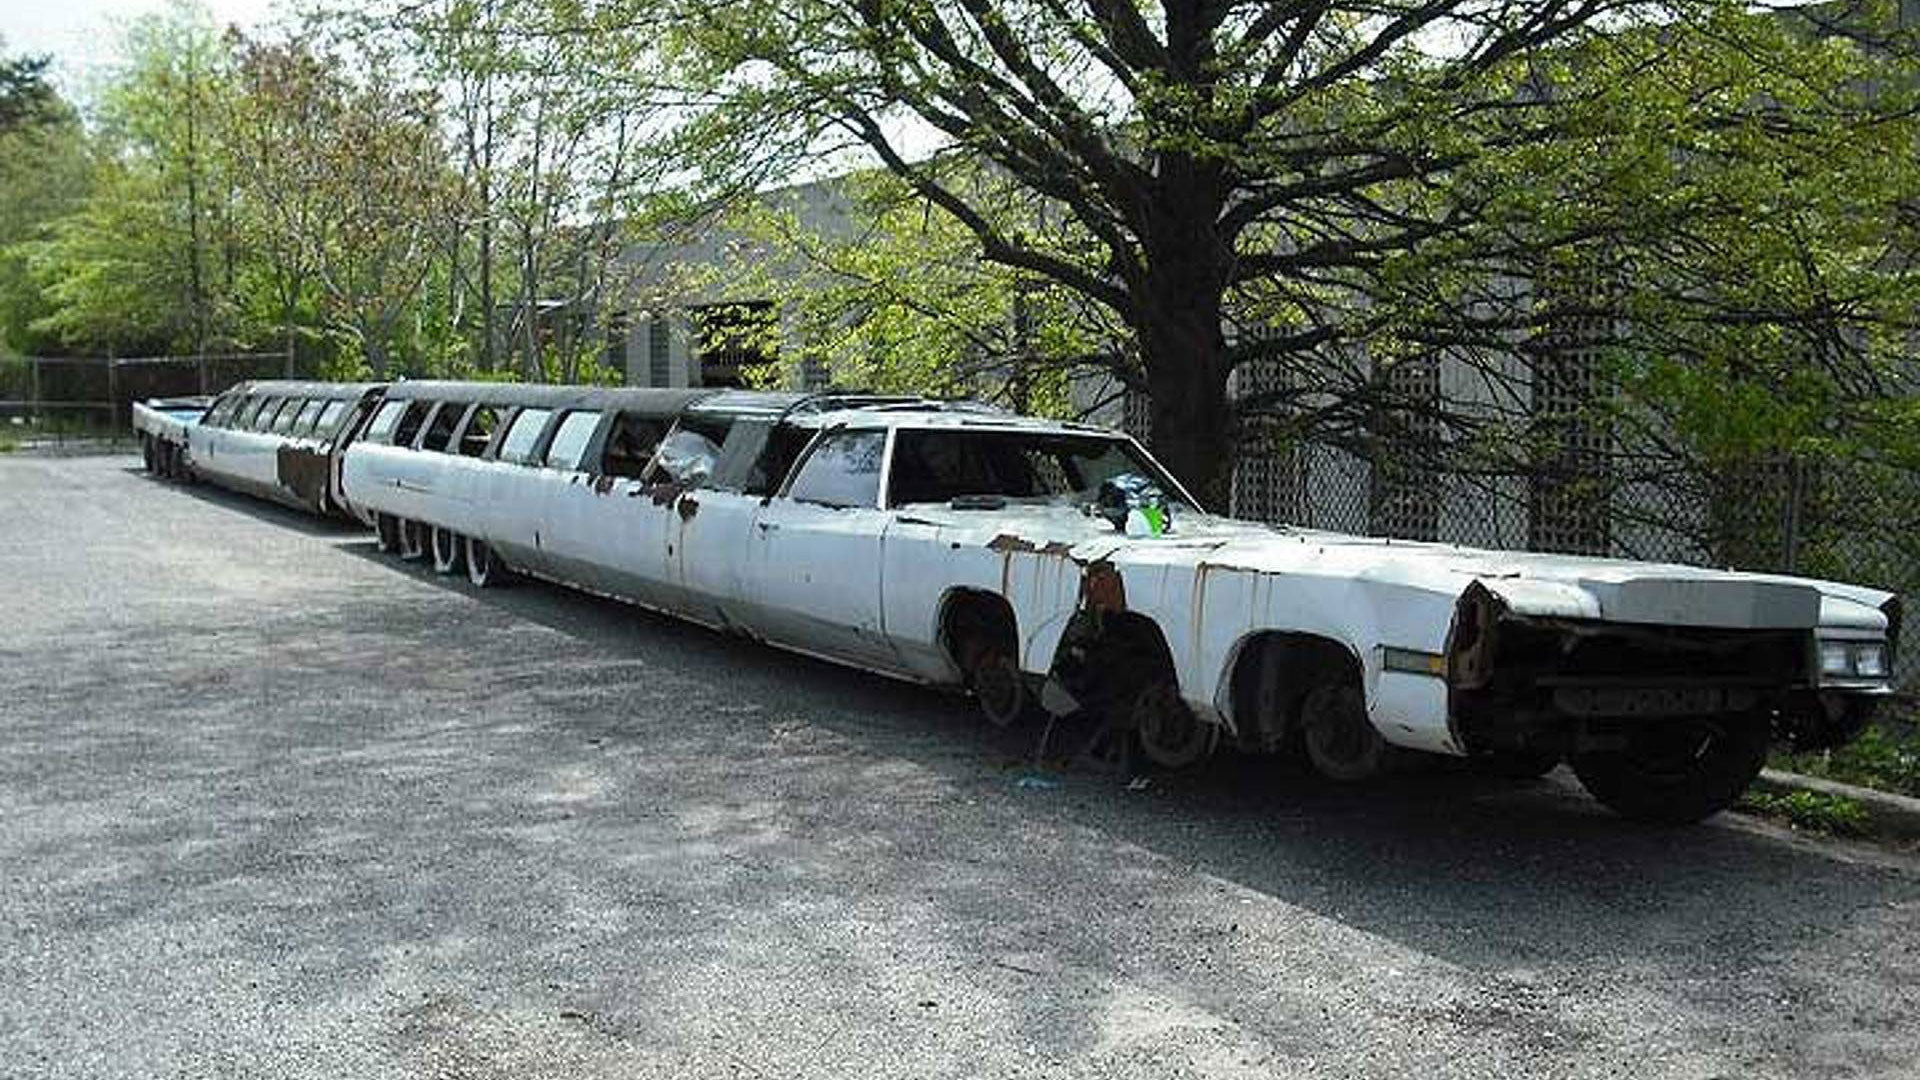 világ leghosszabb autója cadillac limuzin